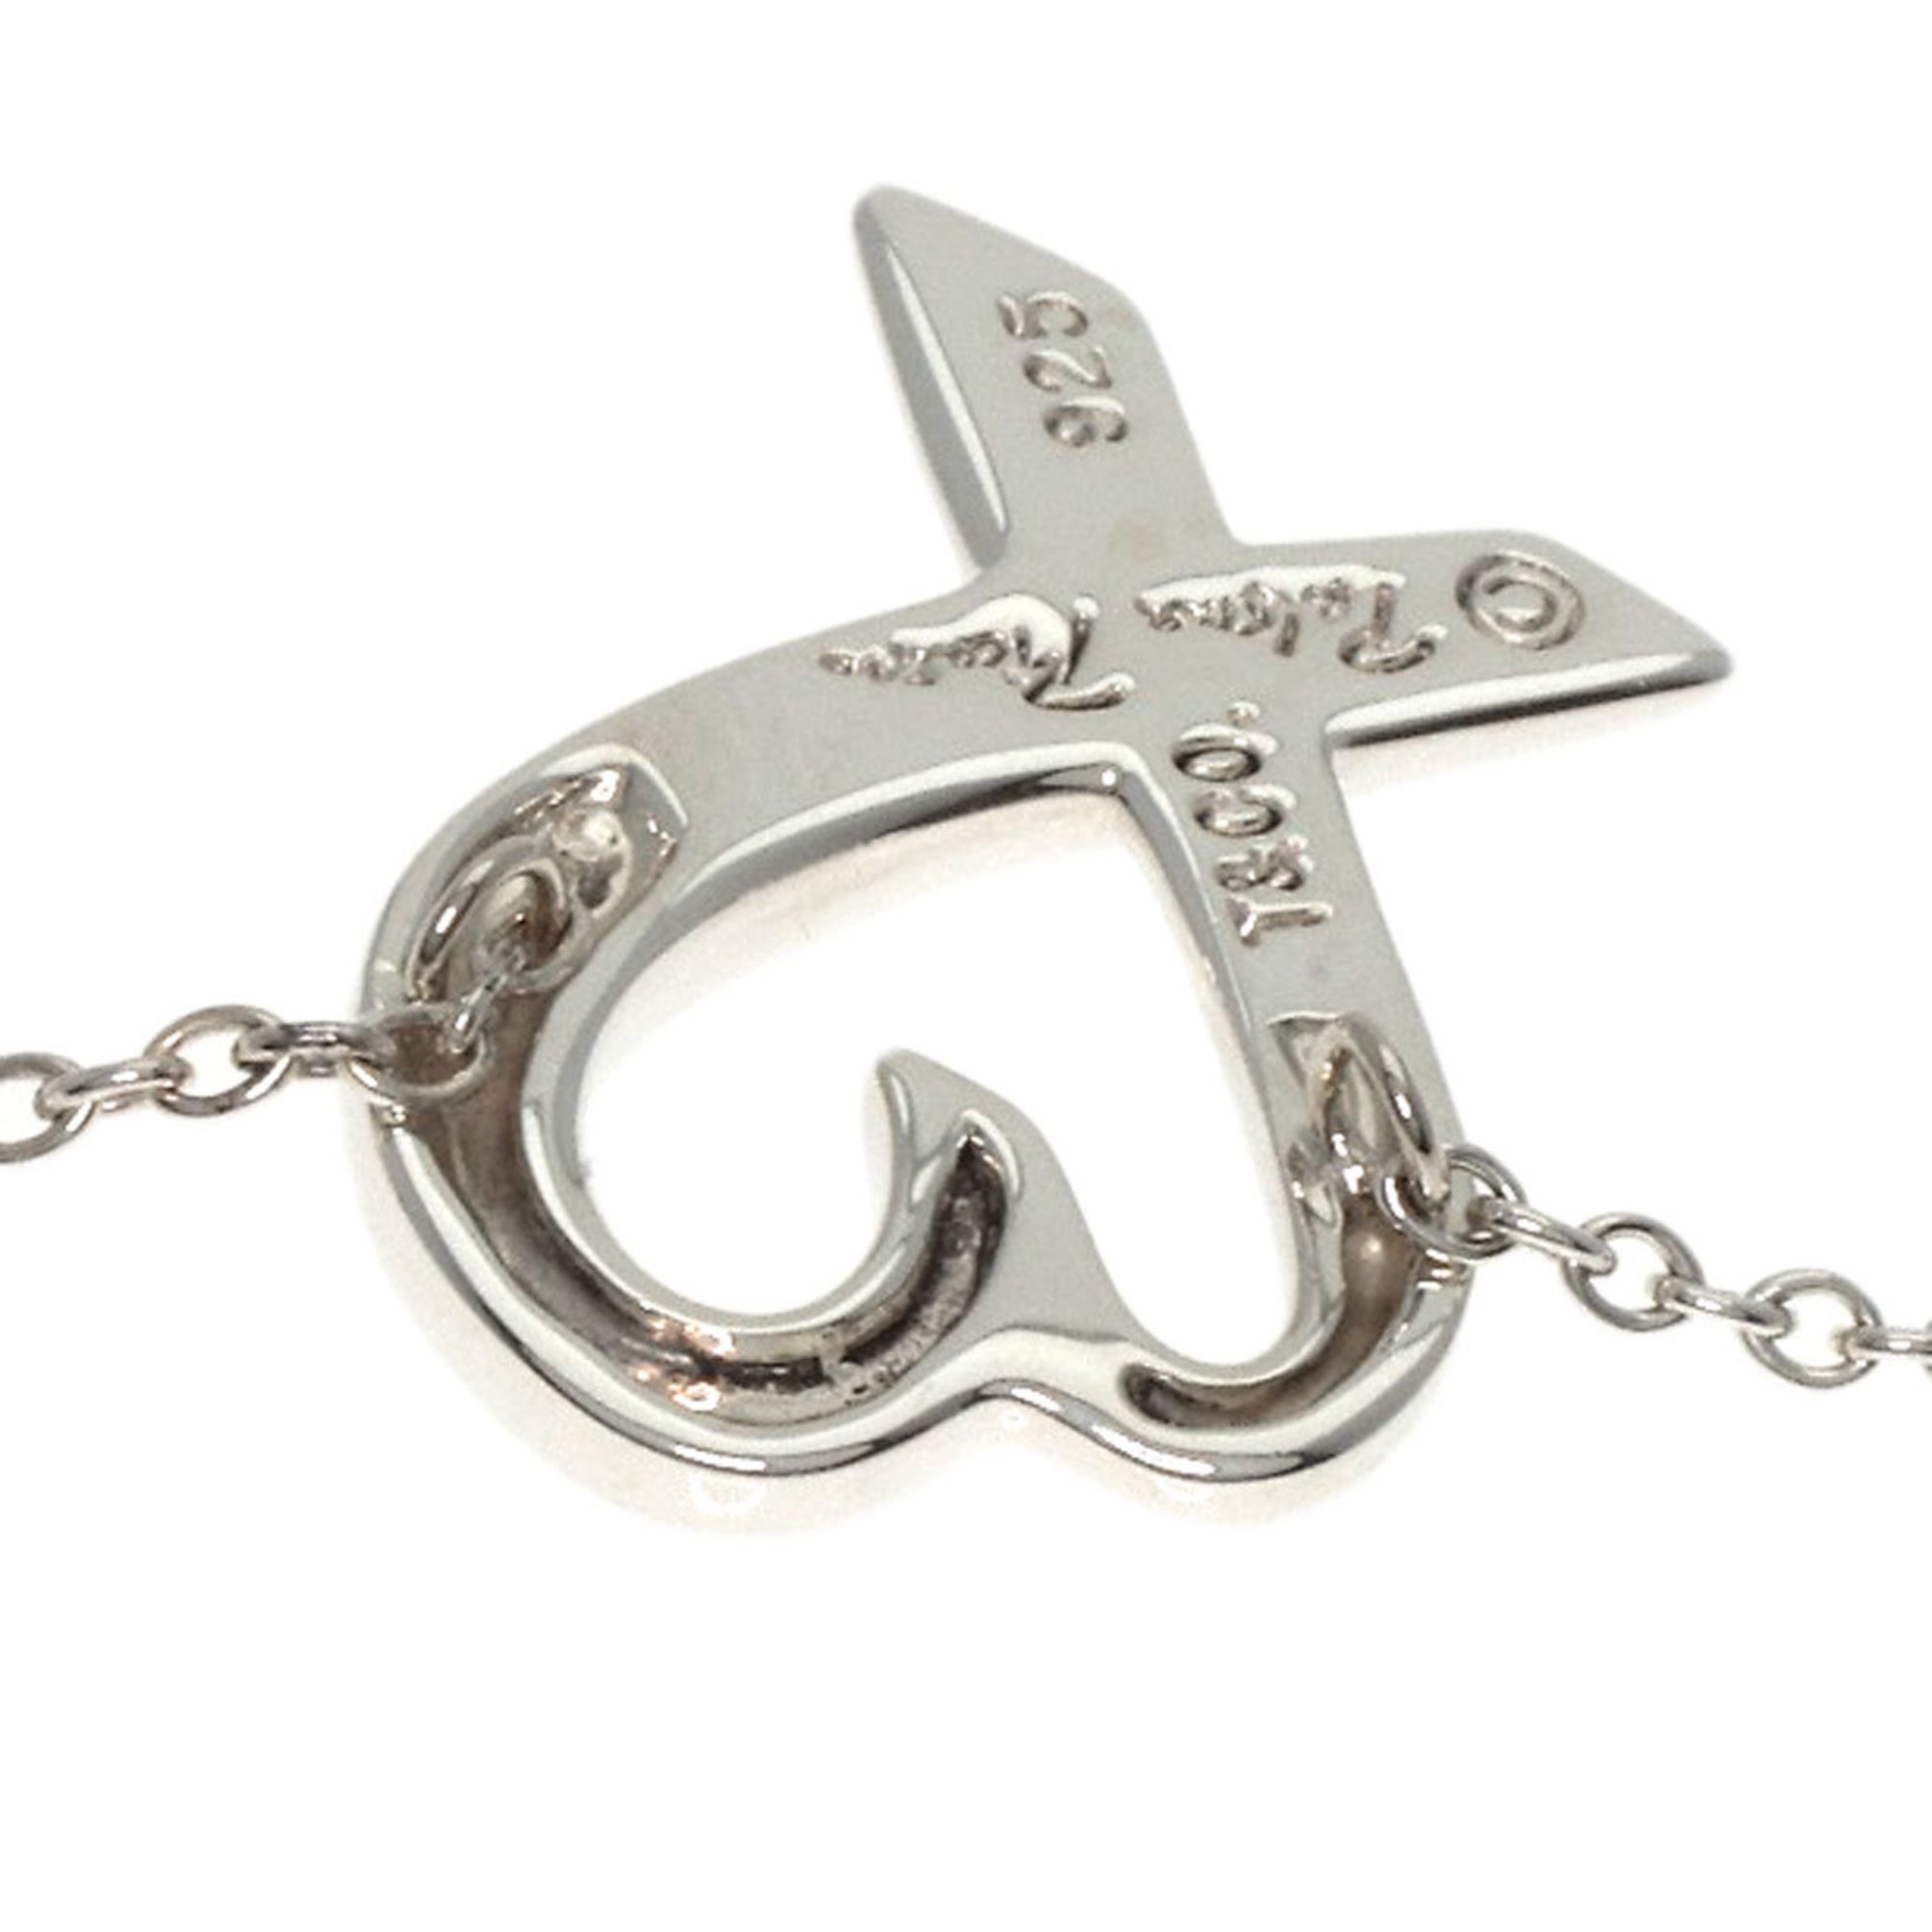 Tiffany Loving Heart Necklace Silver Women's